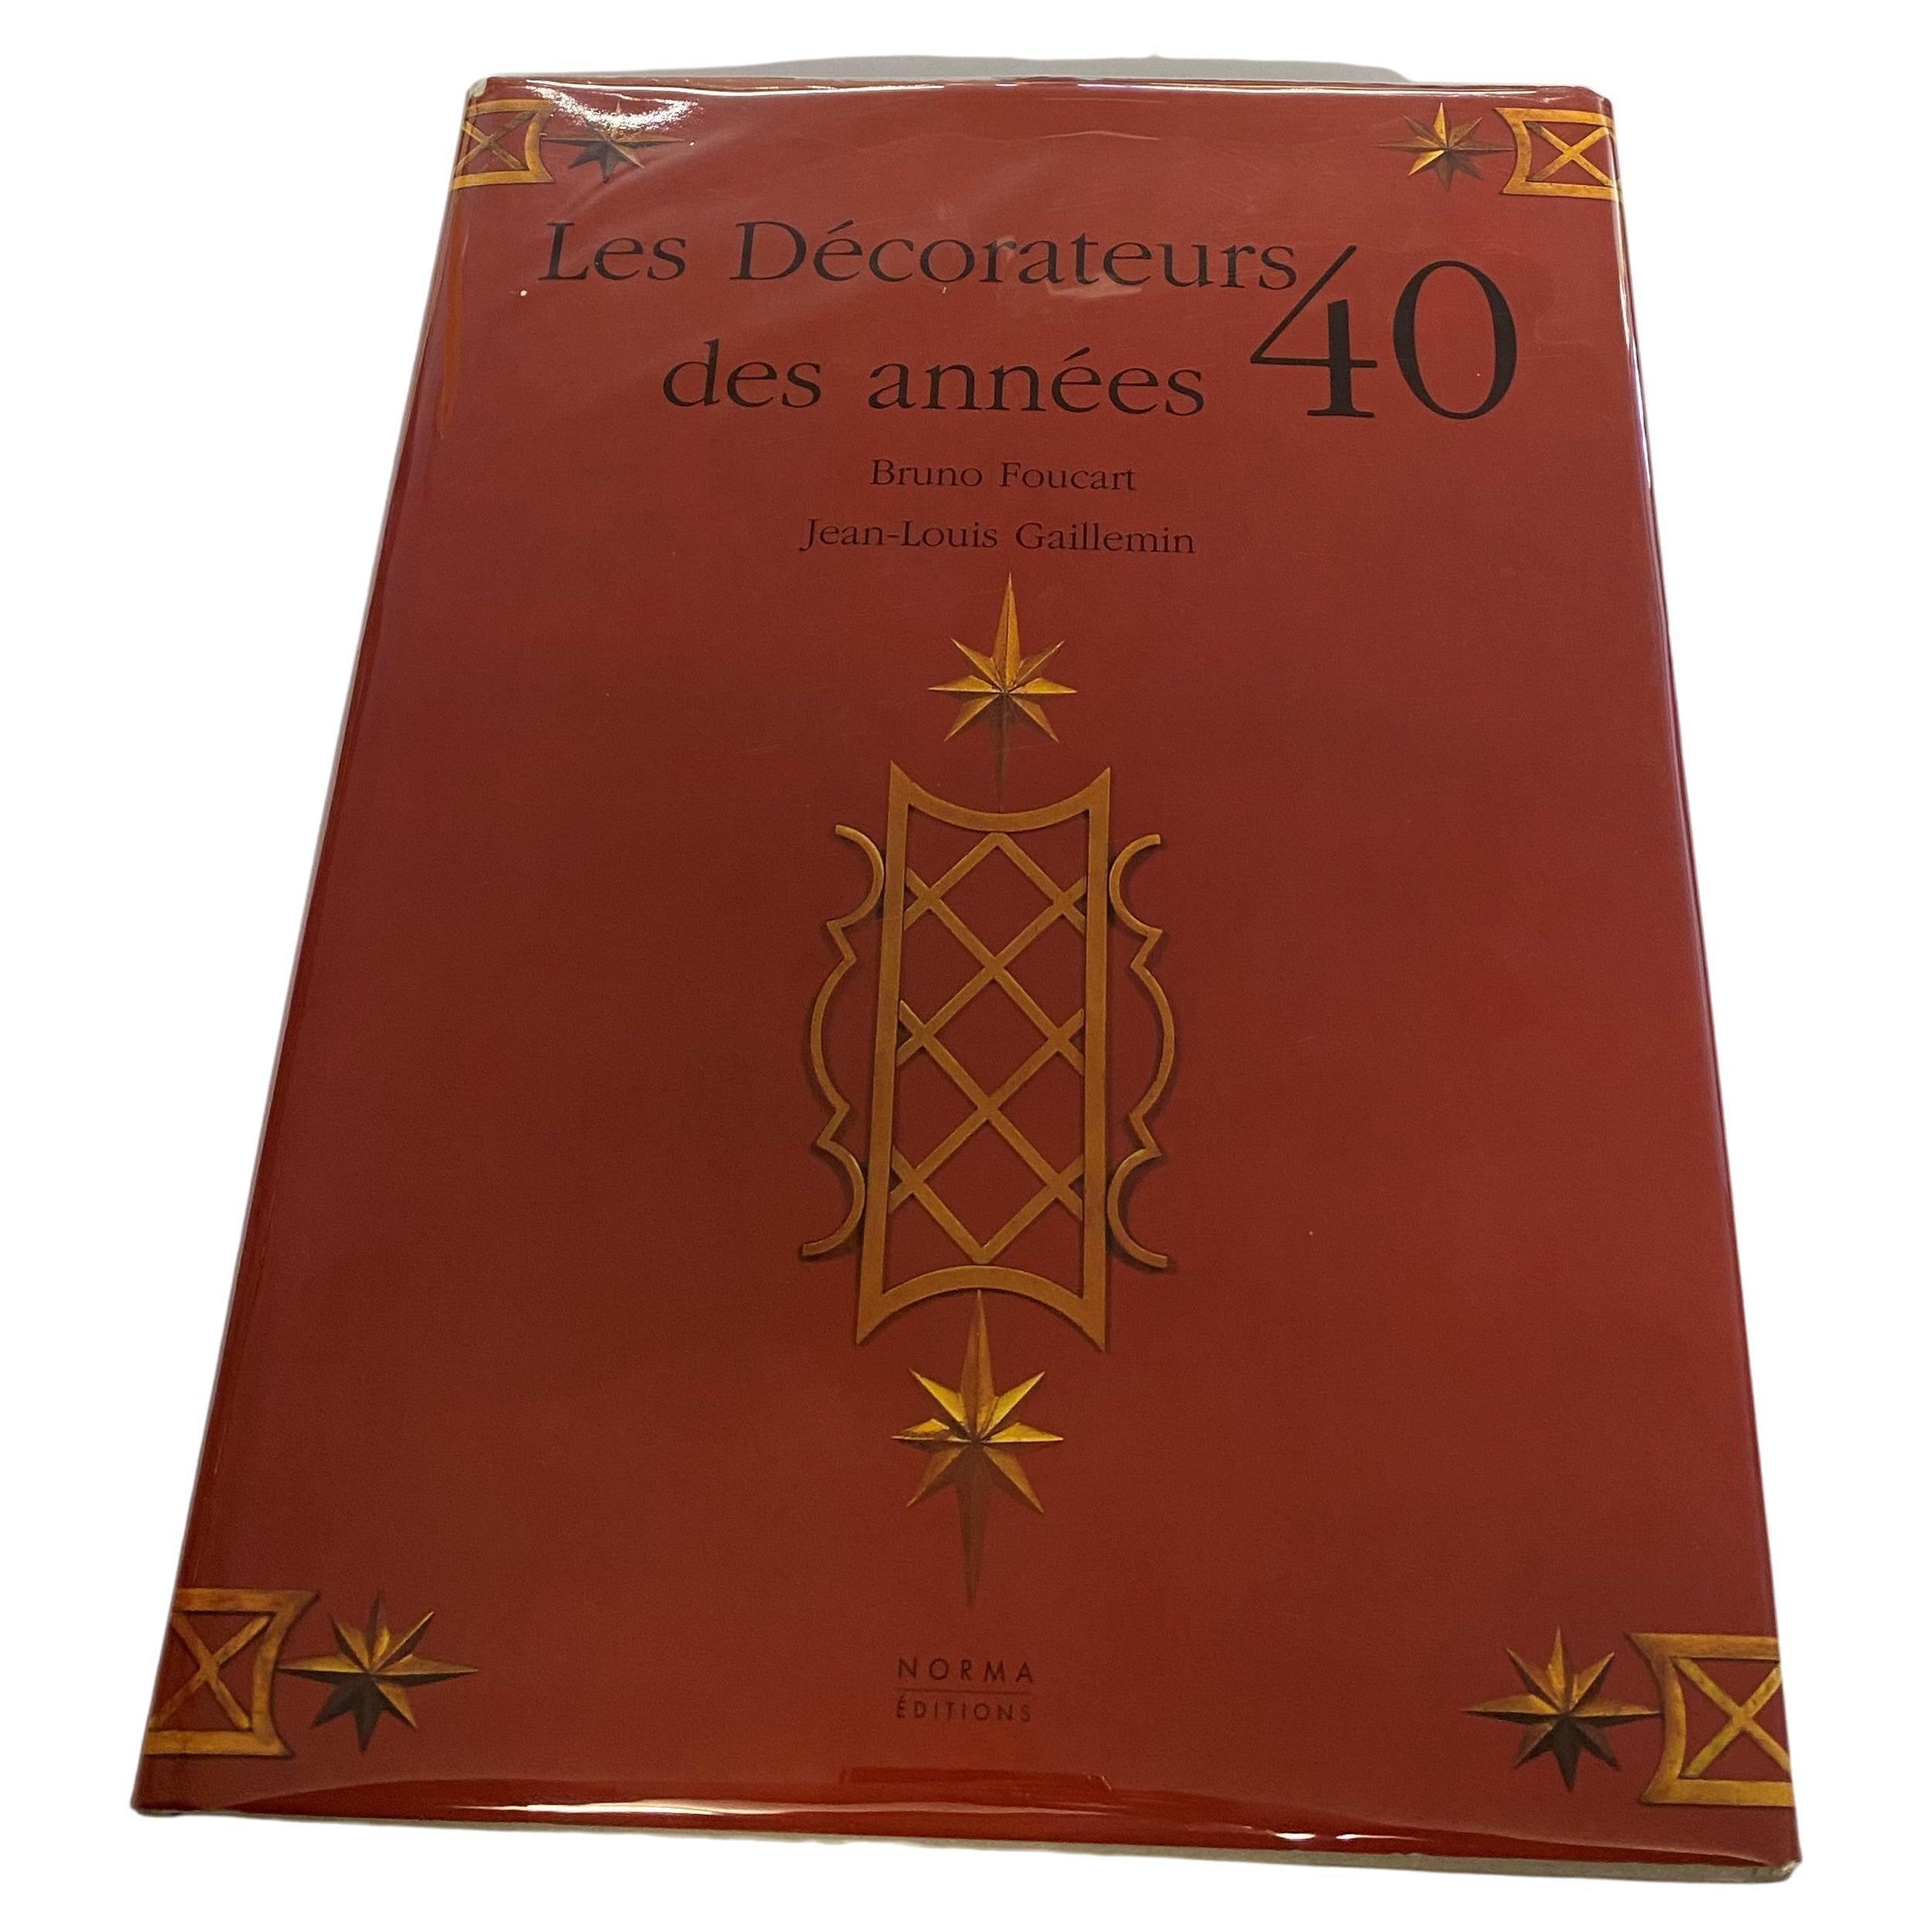 Les Decorateurs des Annees 40 by Bruno Foucart & Jean-Louis Gaillemin (Book) For Sale